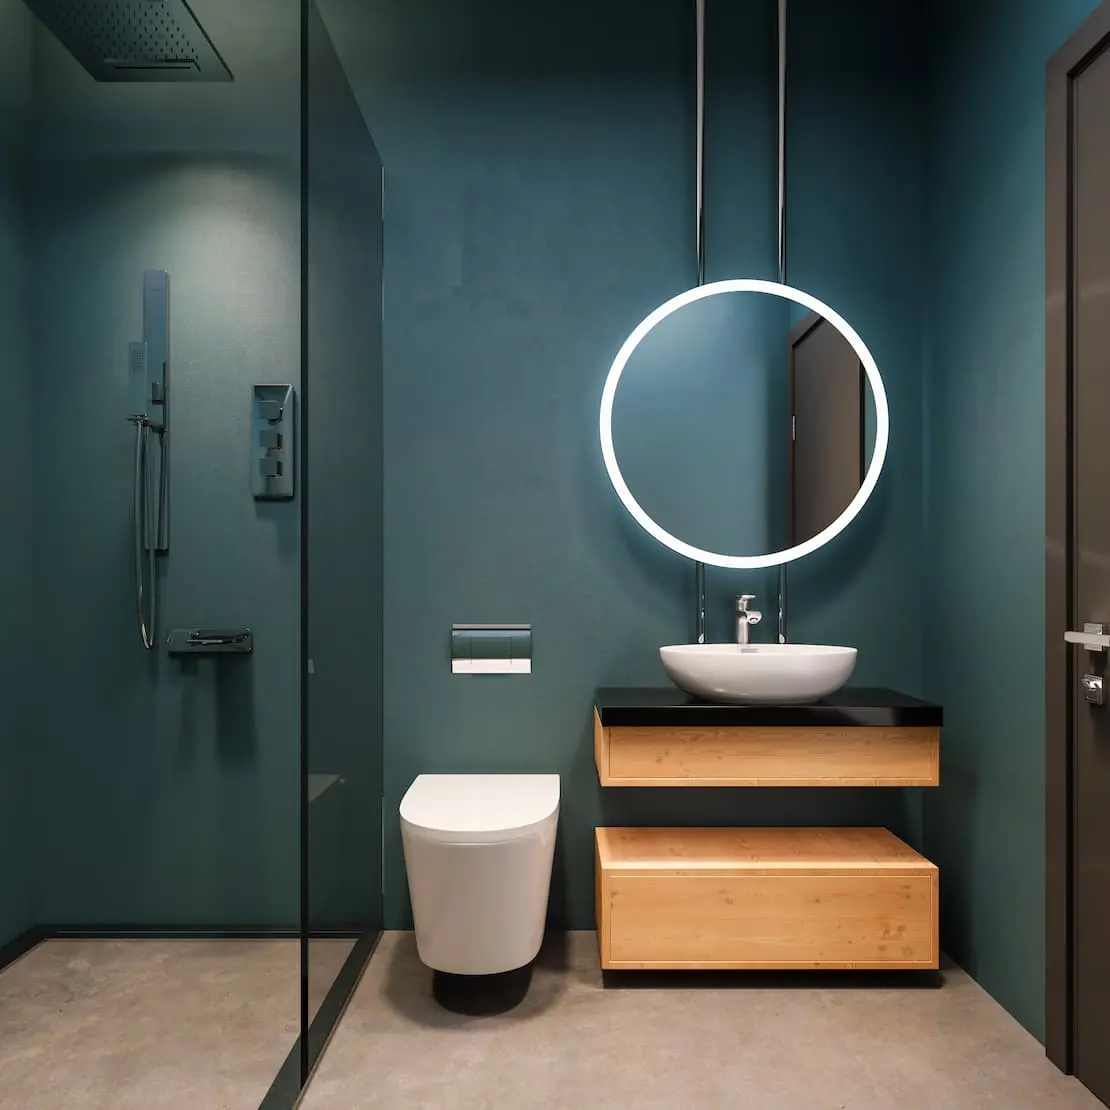 Kupaonica sa svijetlim okruglim ogledalom i zidom boje Navy Blue mikrocementa